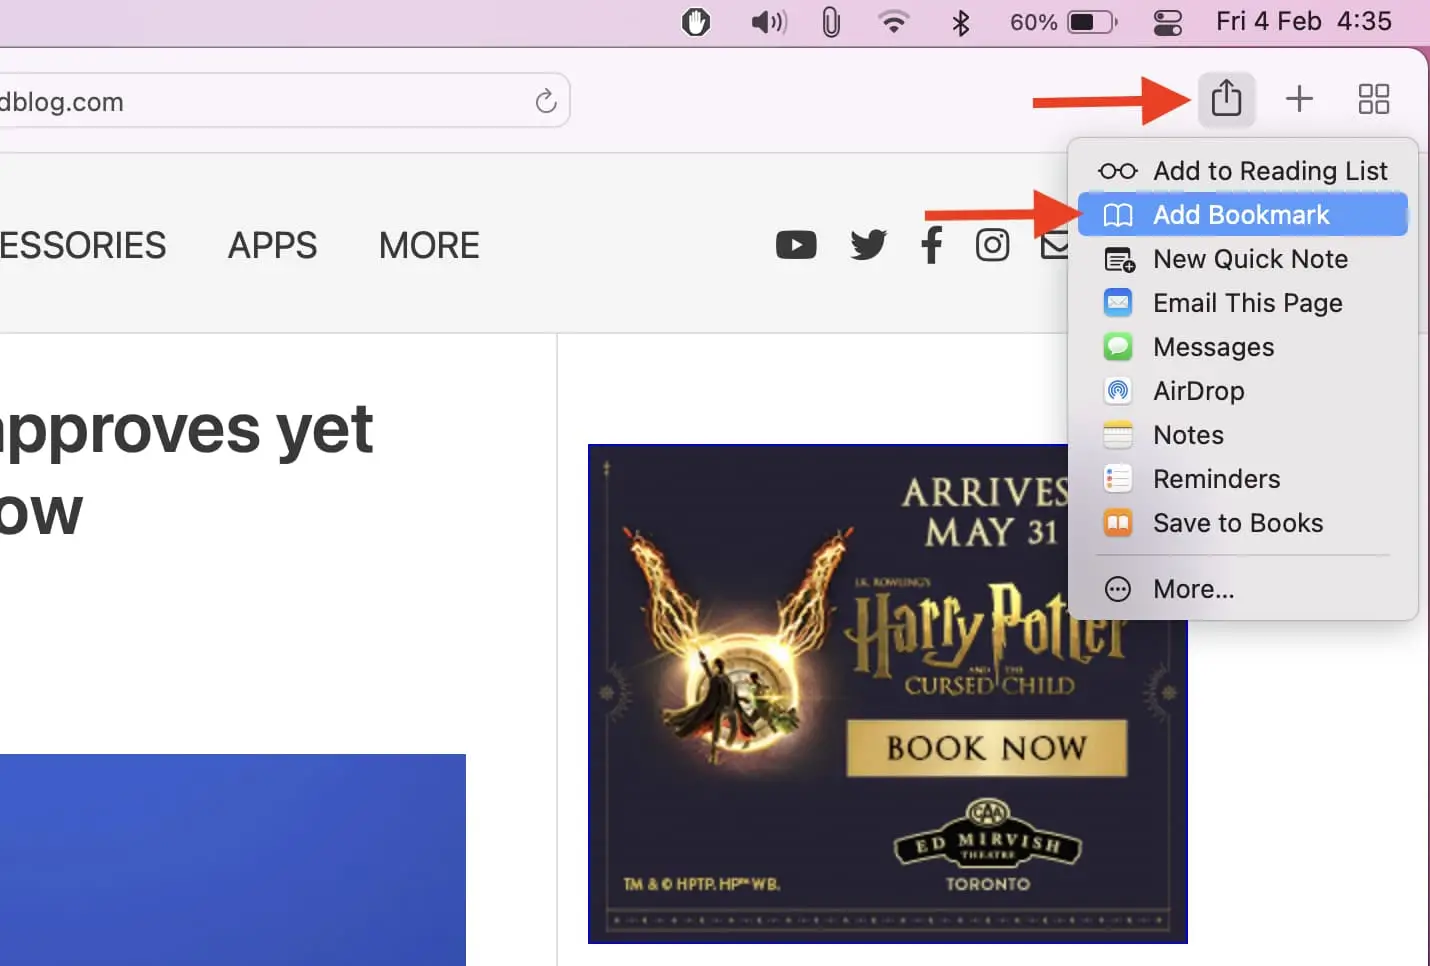 How to add a bookmark in Safari on Mac